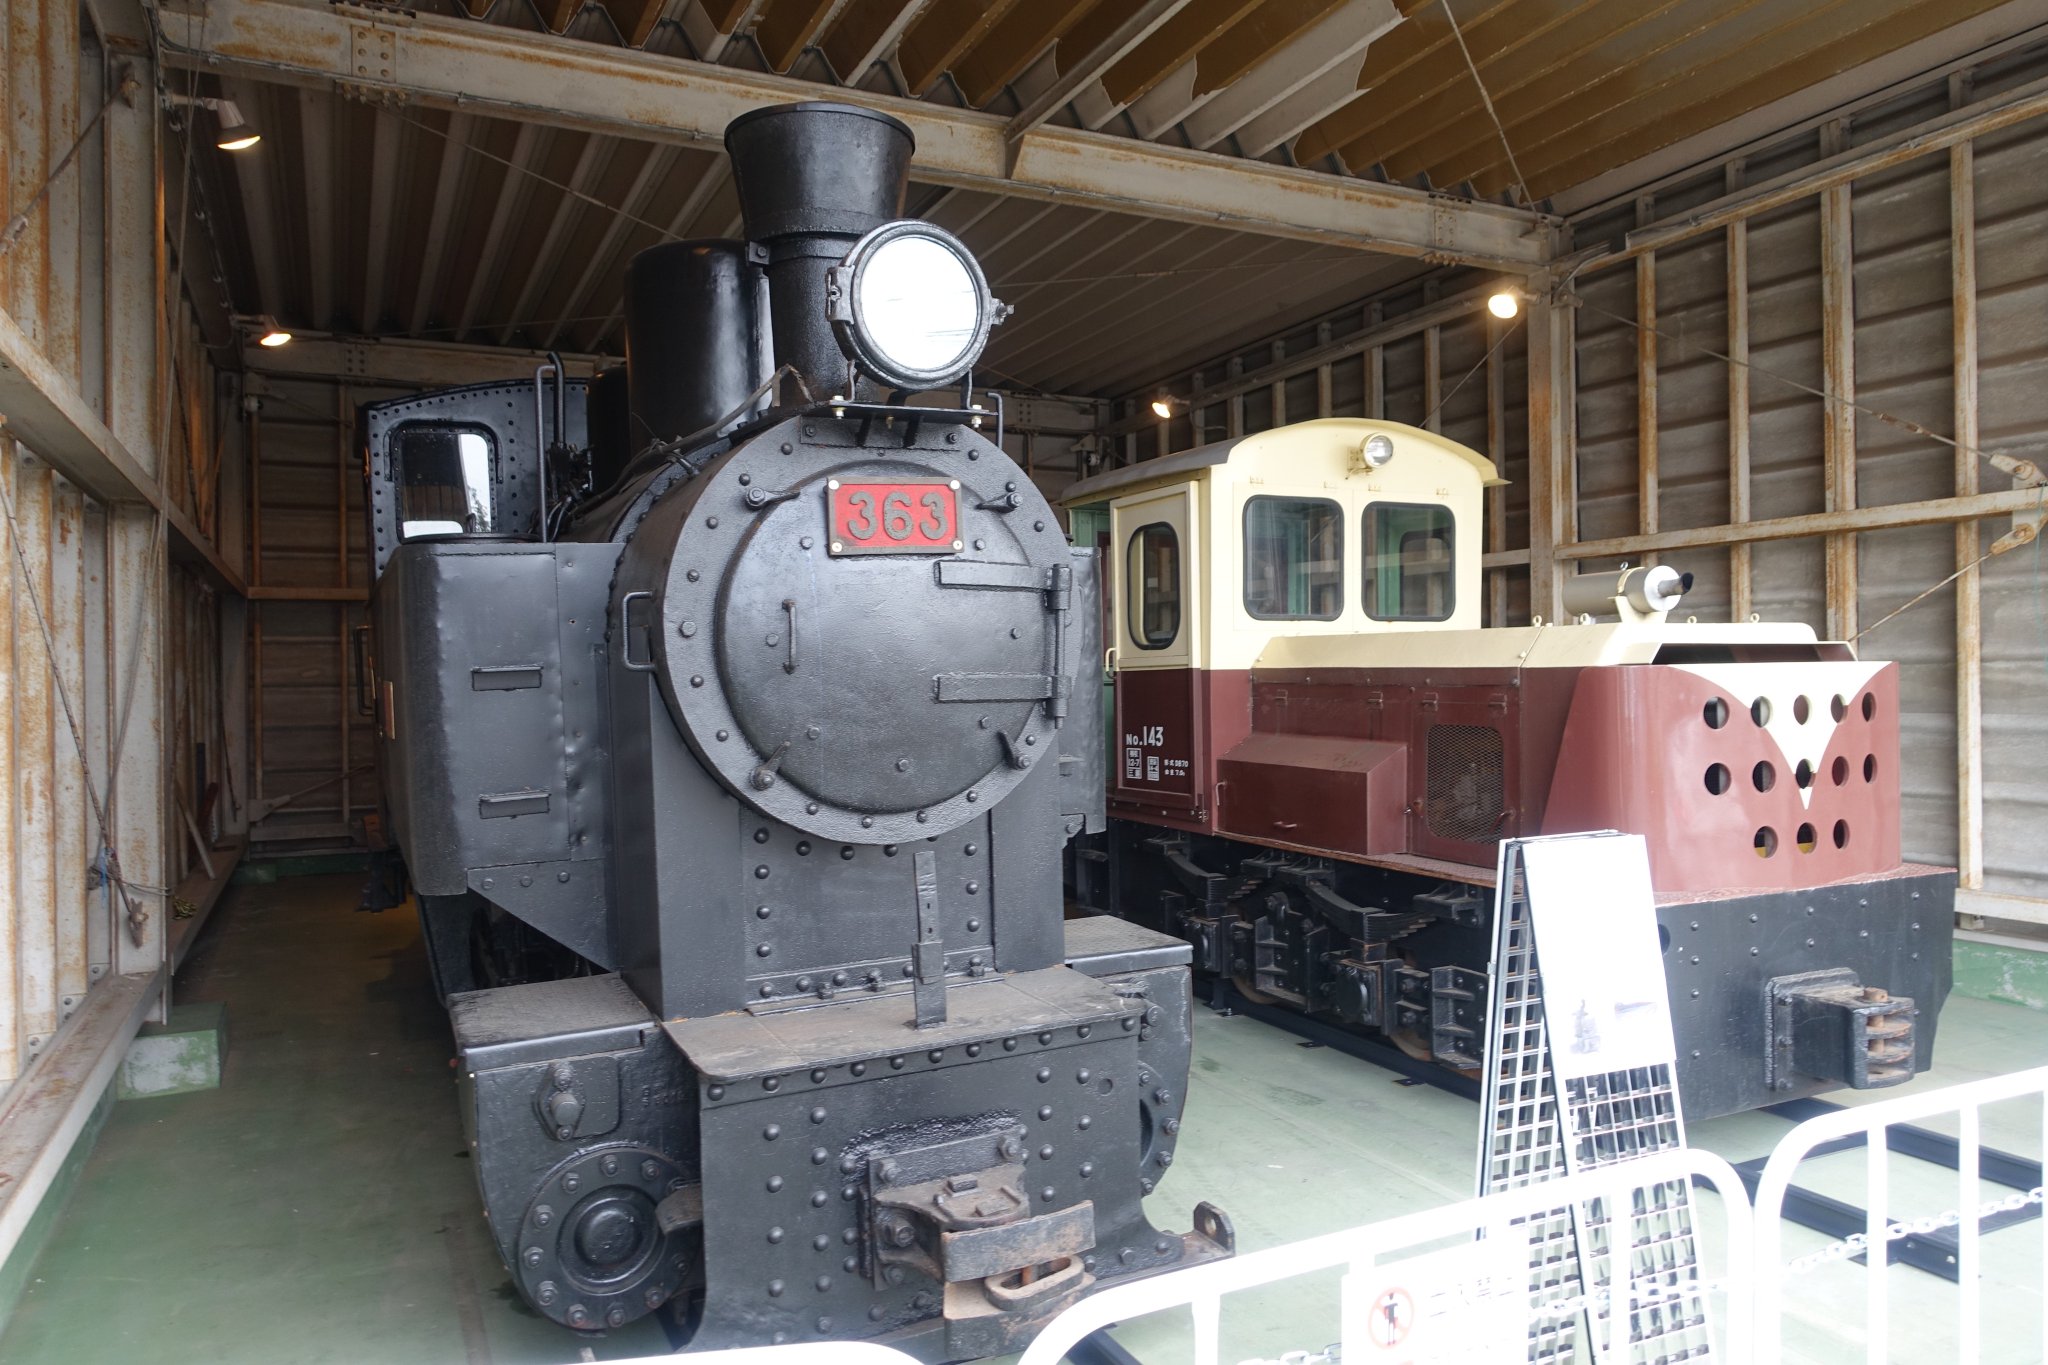 いぶき 旅と模型と写真箱 19年12月13日 埼玉の鶴ヶ島市役所にて公開されている 鉄道模型メーカーのｋａｔｏ こと関水金属さん所有の蒸気機関車とディーゼル機関車を見に行ってきました どちらも野辺山ｓｌランドから移っ